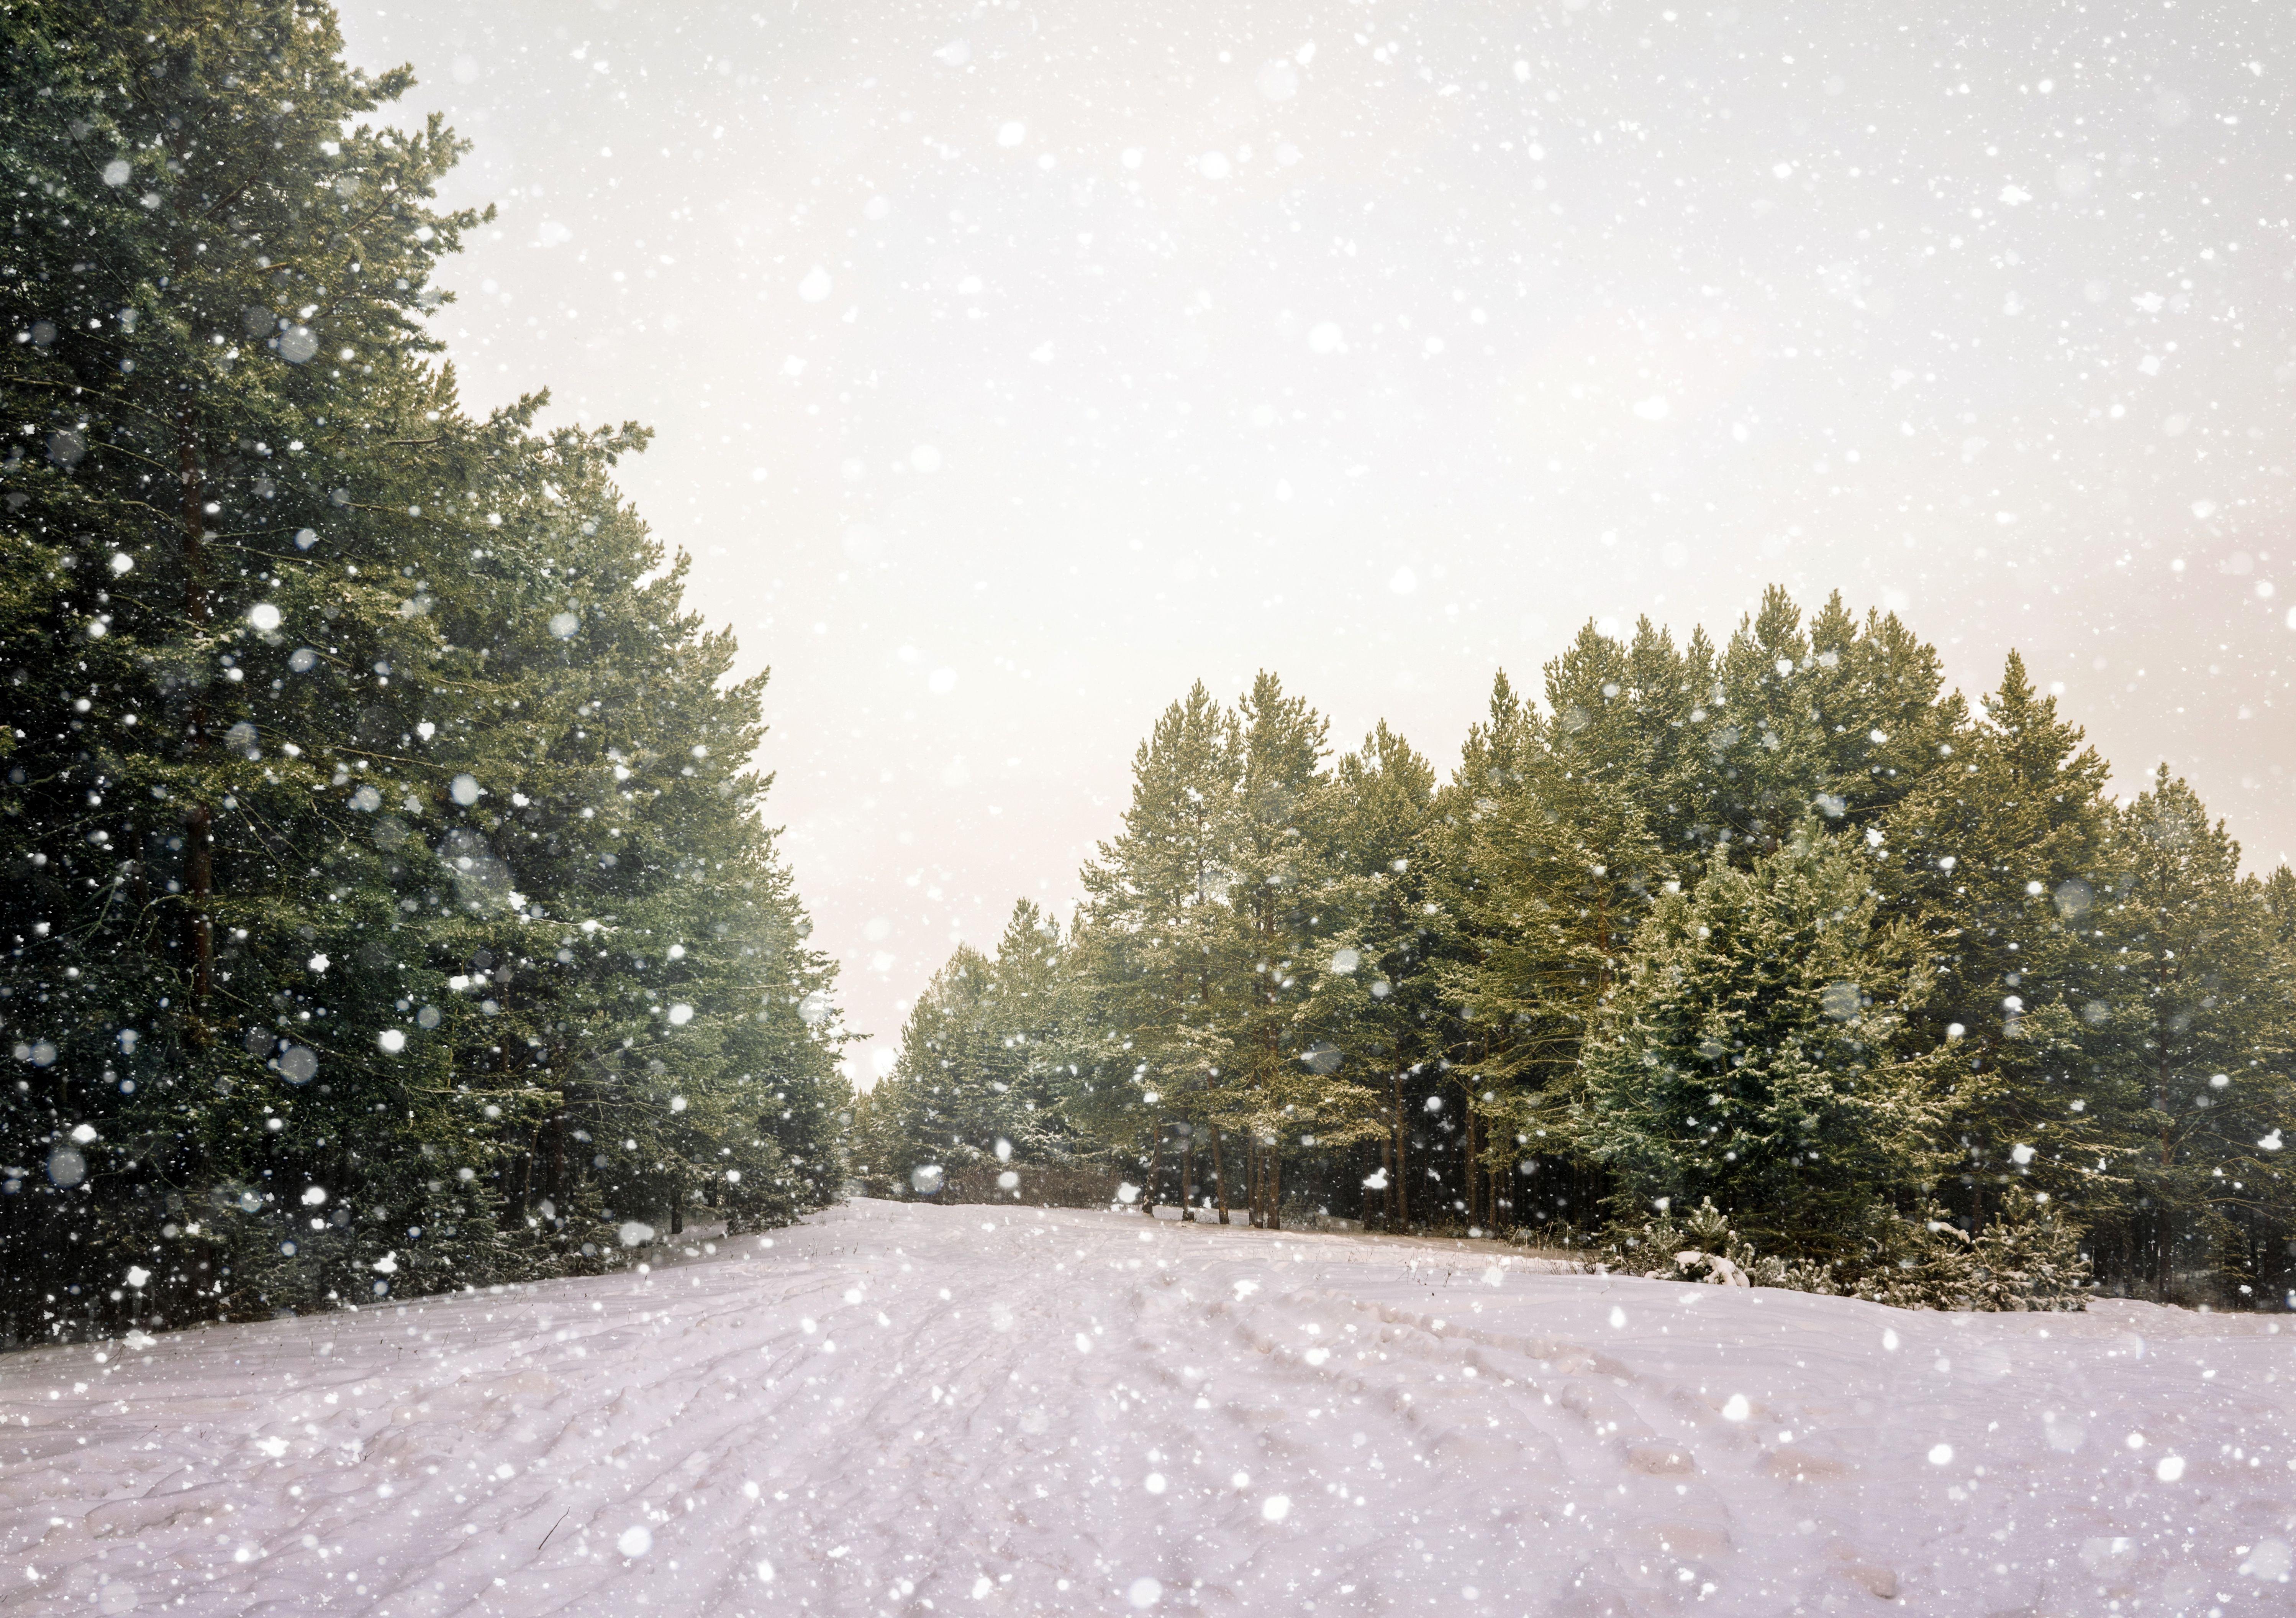 Зима идет» картина Суховой Натальи маслом на холсте — купить на ArtNow.ru